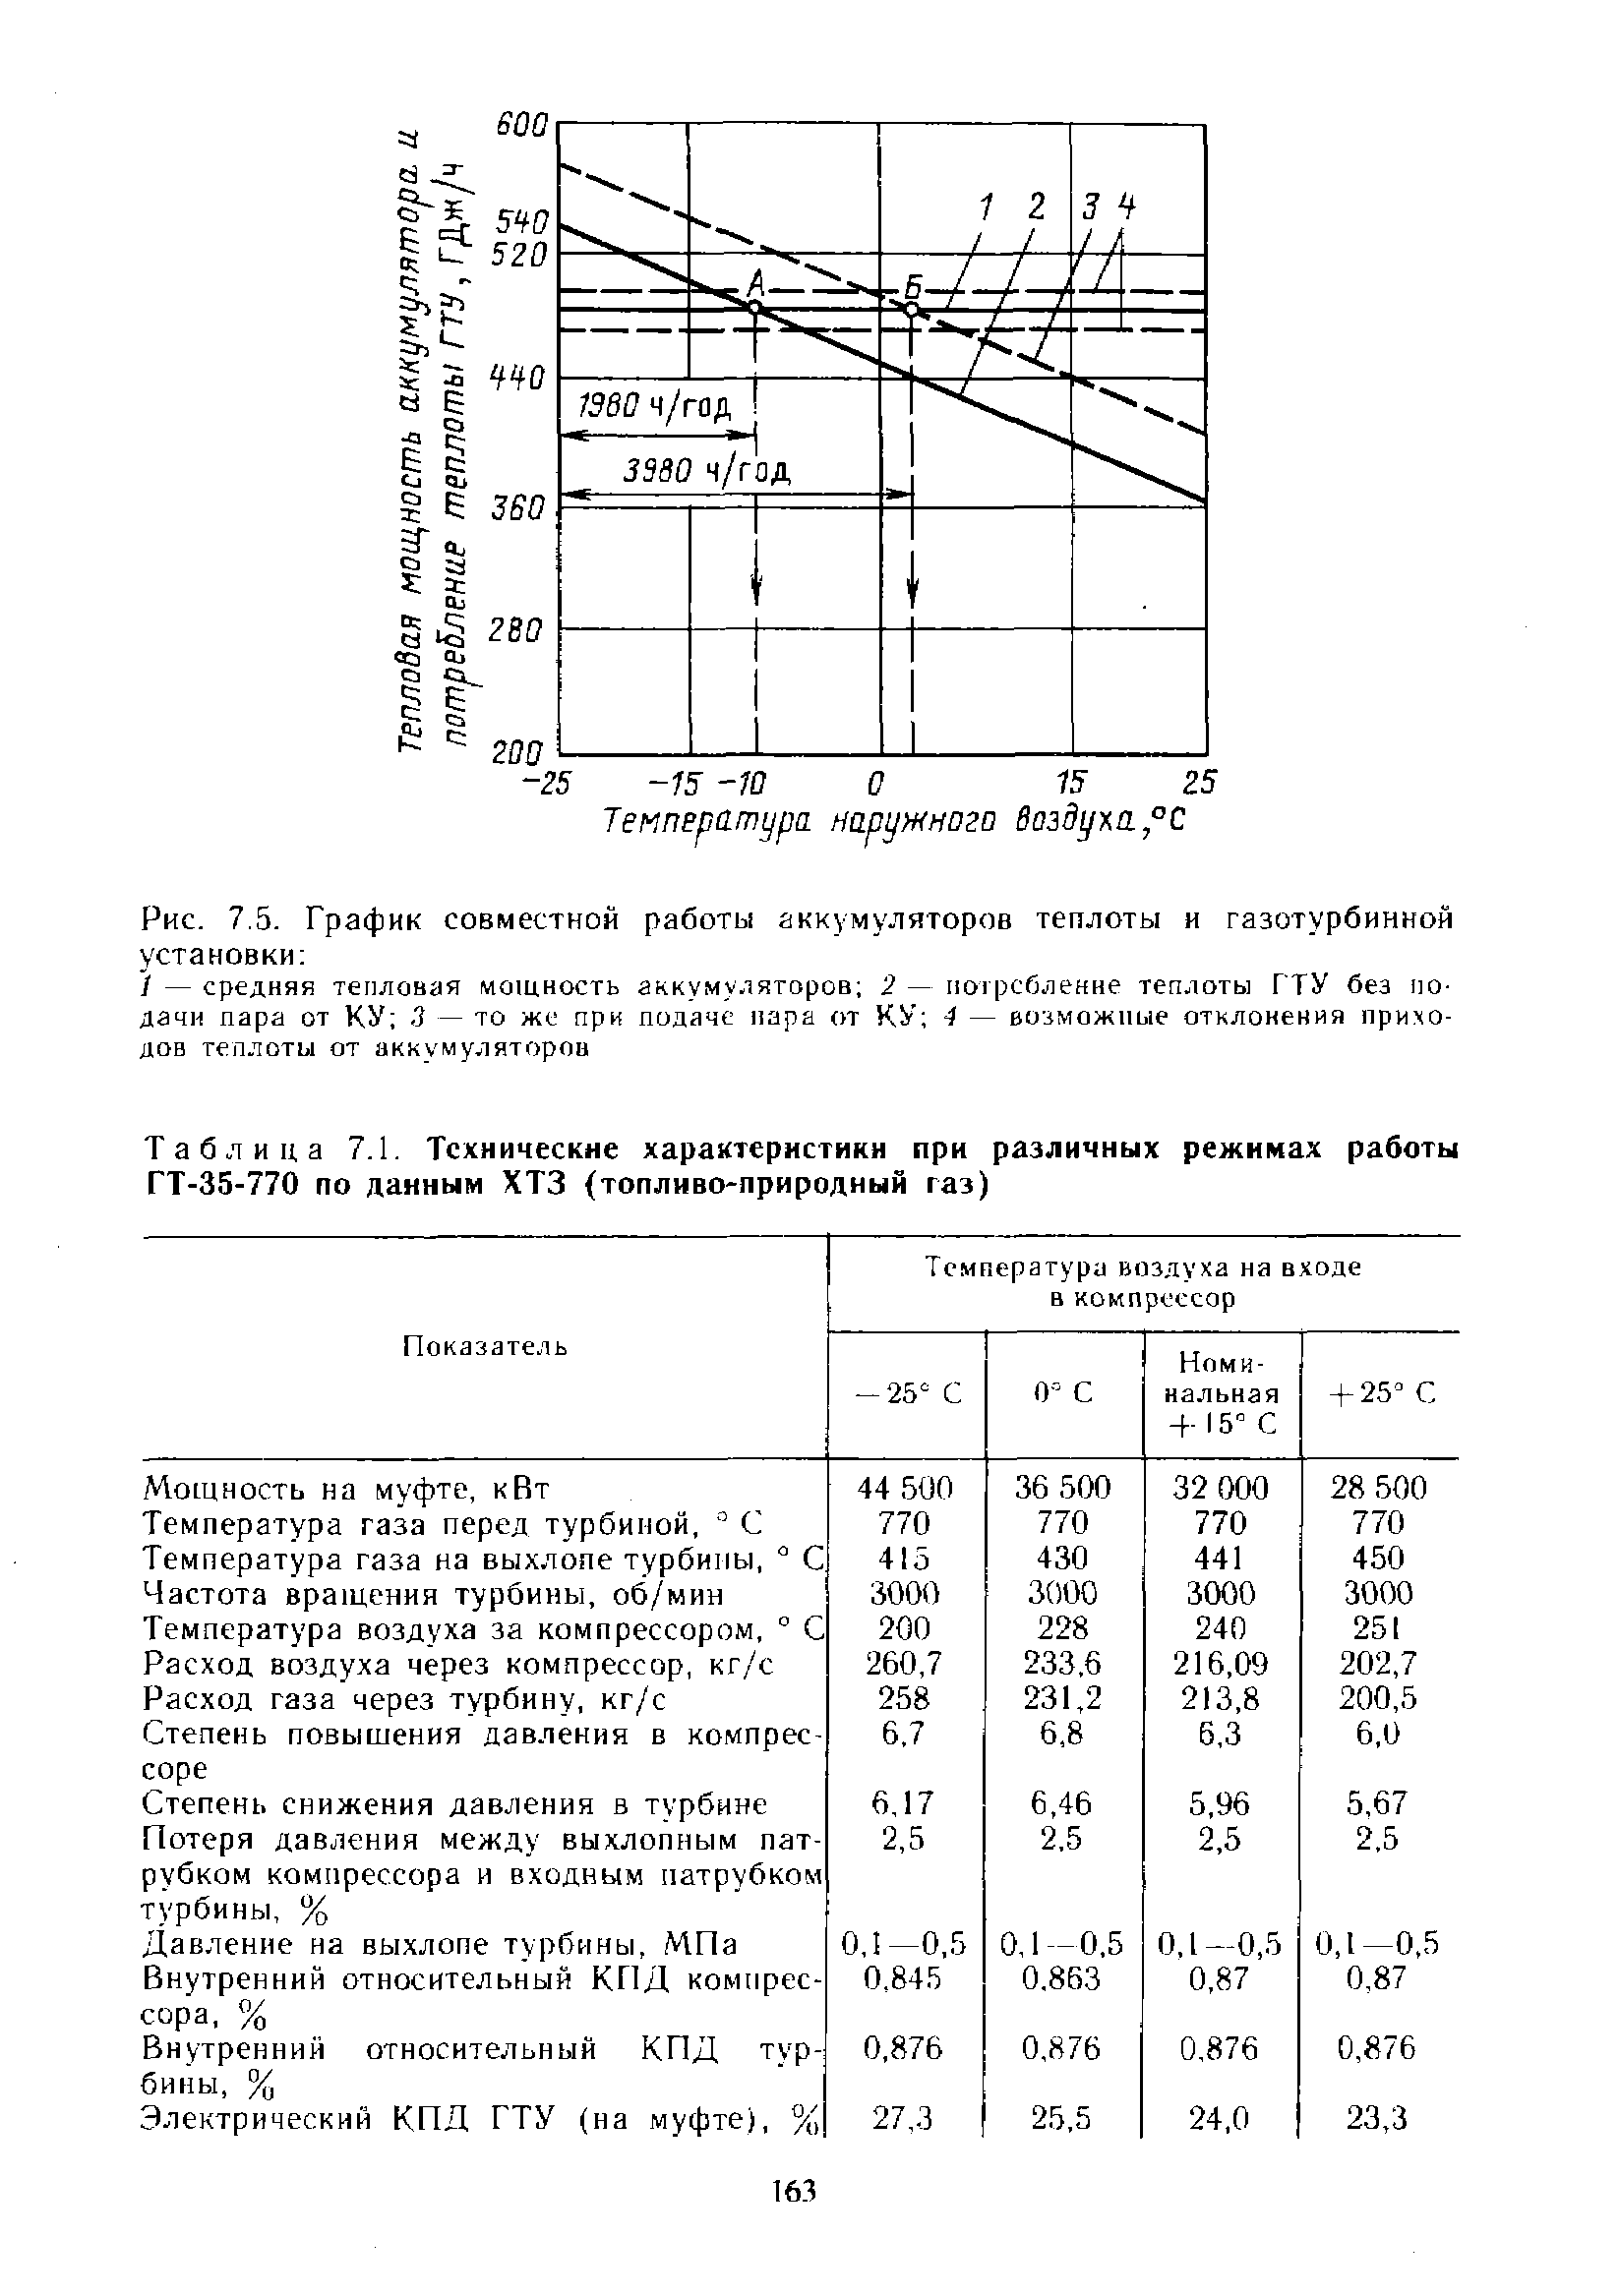 Таблица 7.1. Технические характеристики при различных режимах работы ГТ-35-770 по данным ХТЗ (топливо-природный газ)
